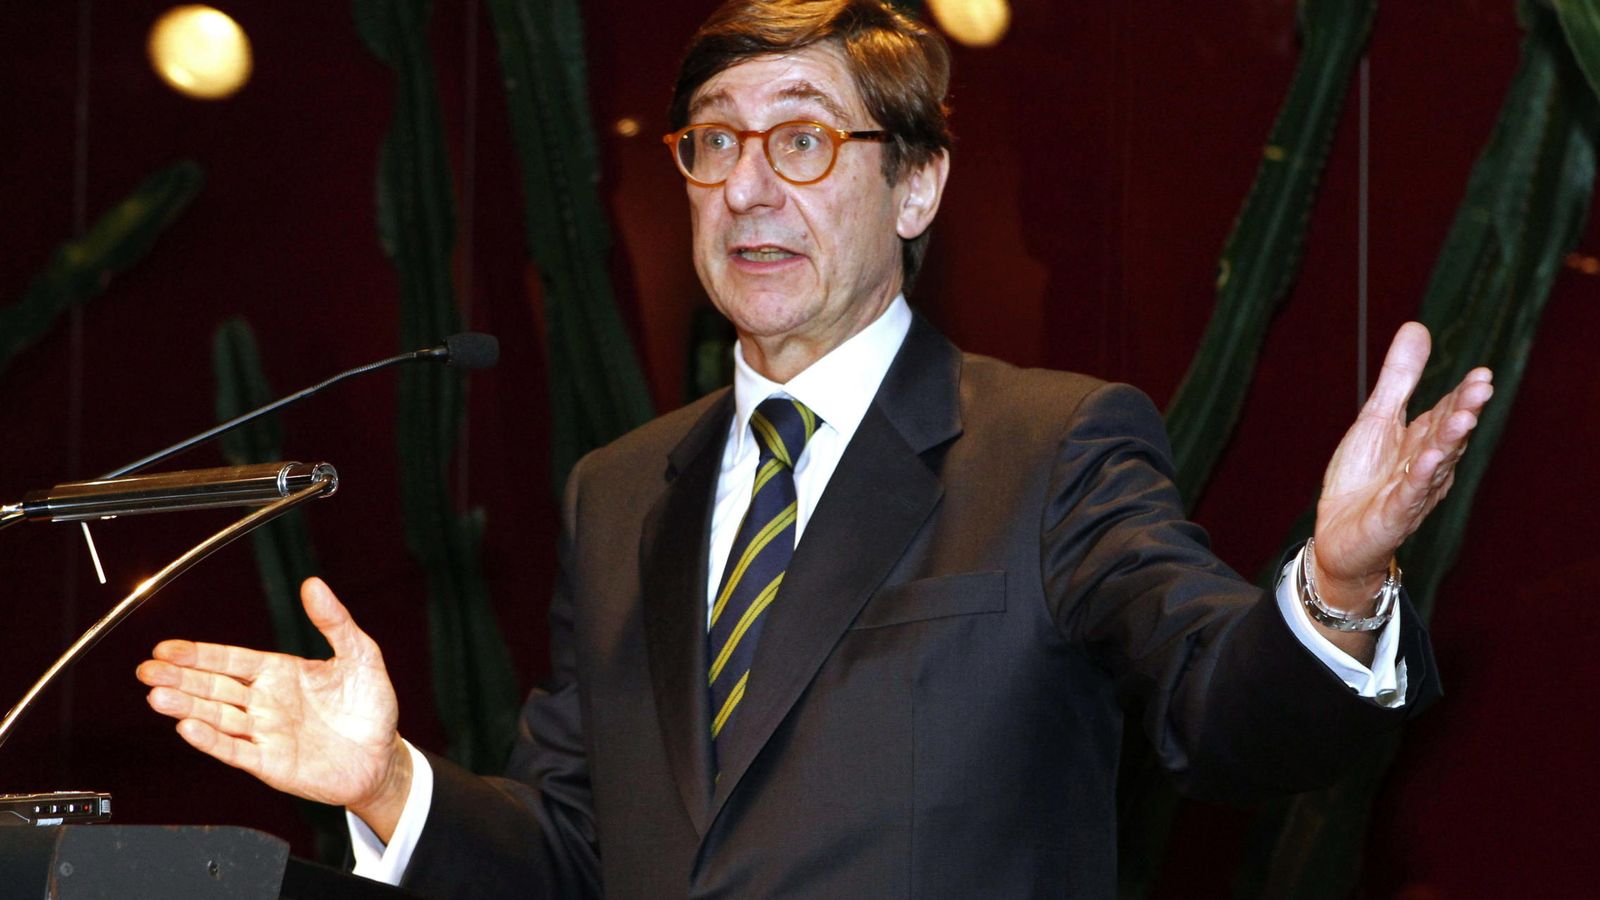 Foto: El presidente de Bankia, José Ignacio Goirigolzarri